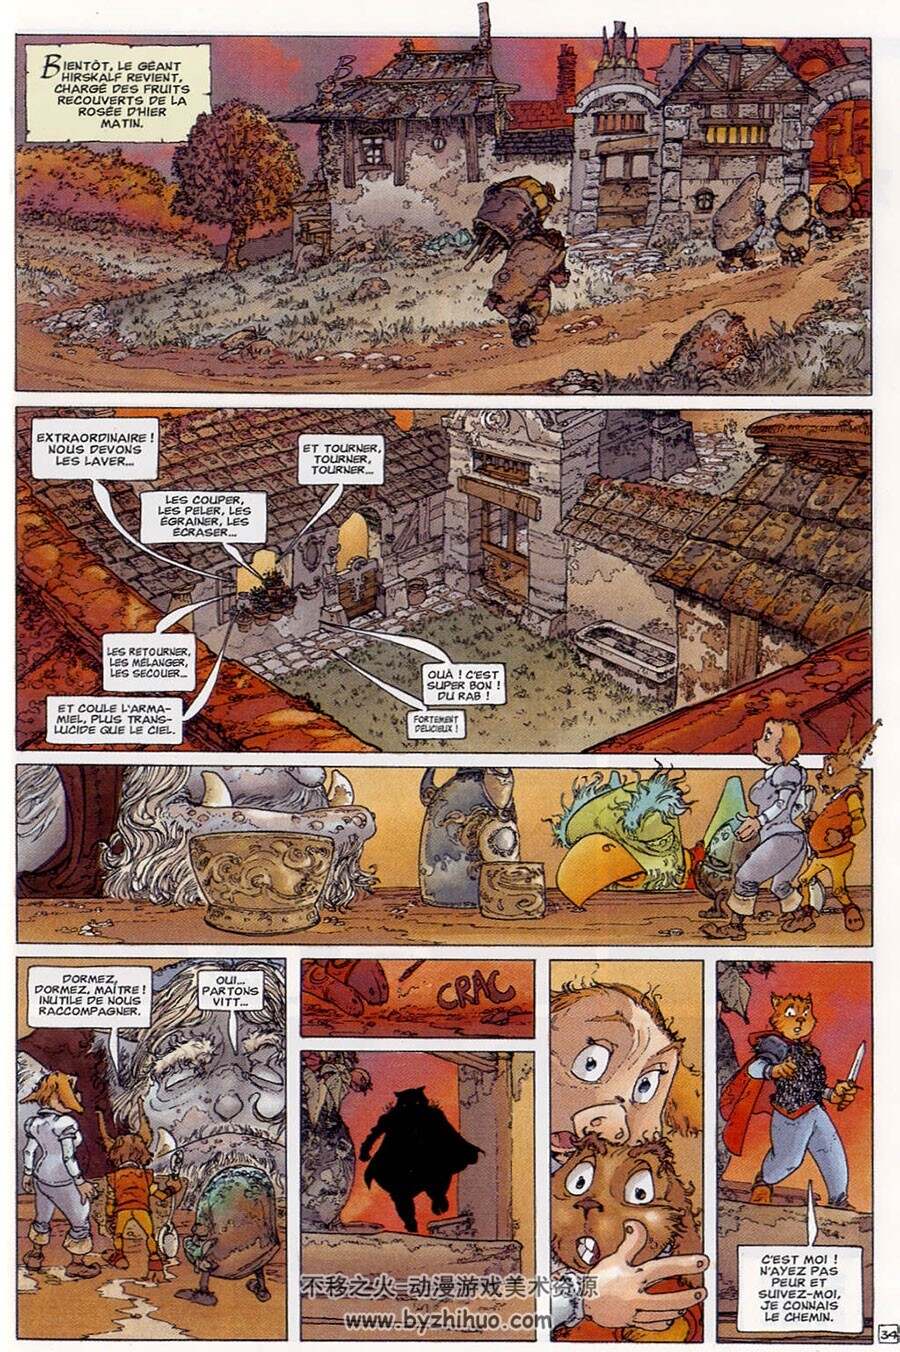 Enwin - Les enfants de Gribourg 第1册 Jean-Jacques Chagnaud - Anouke 奇幻法语漫画